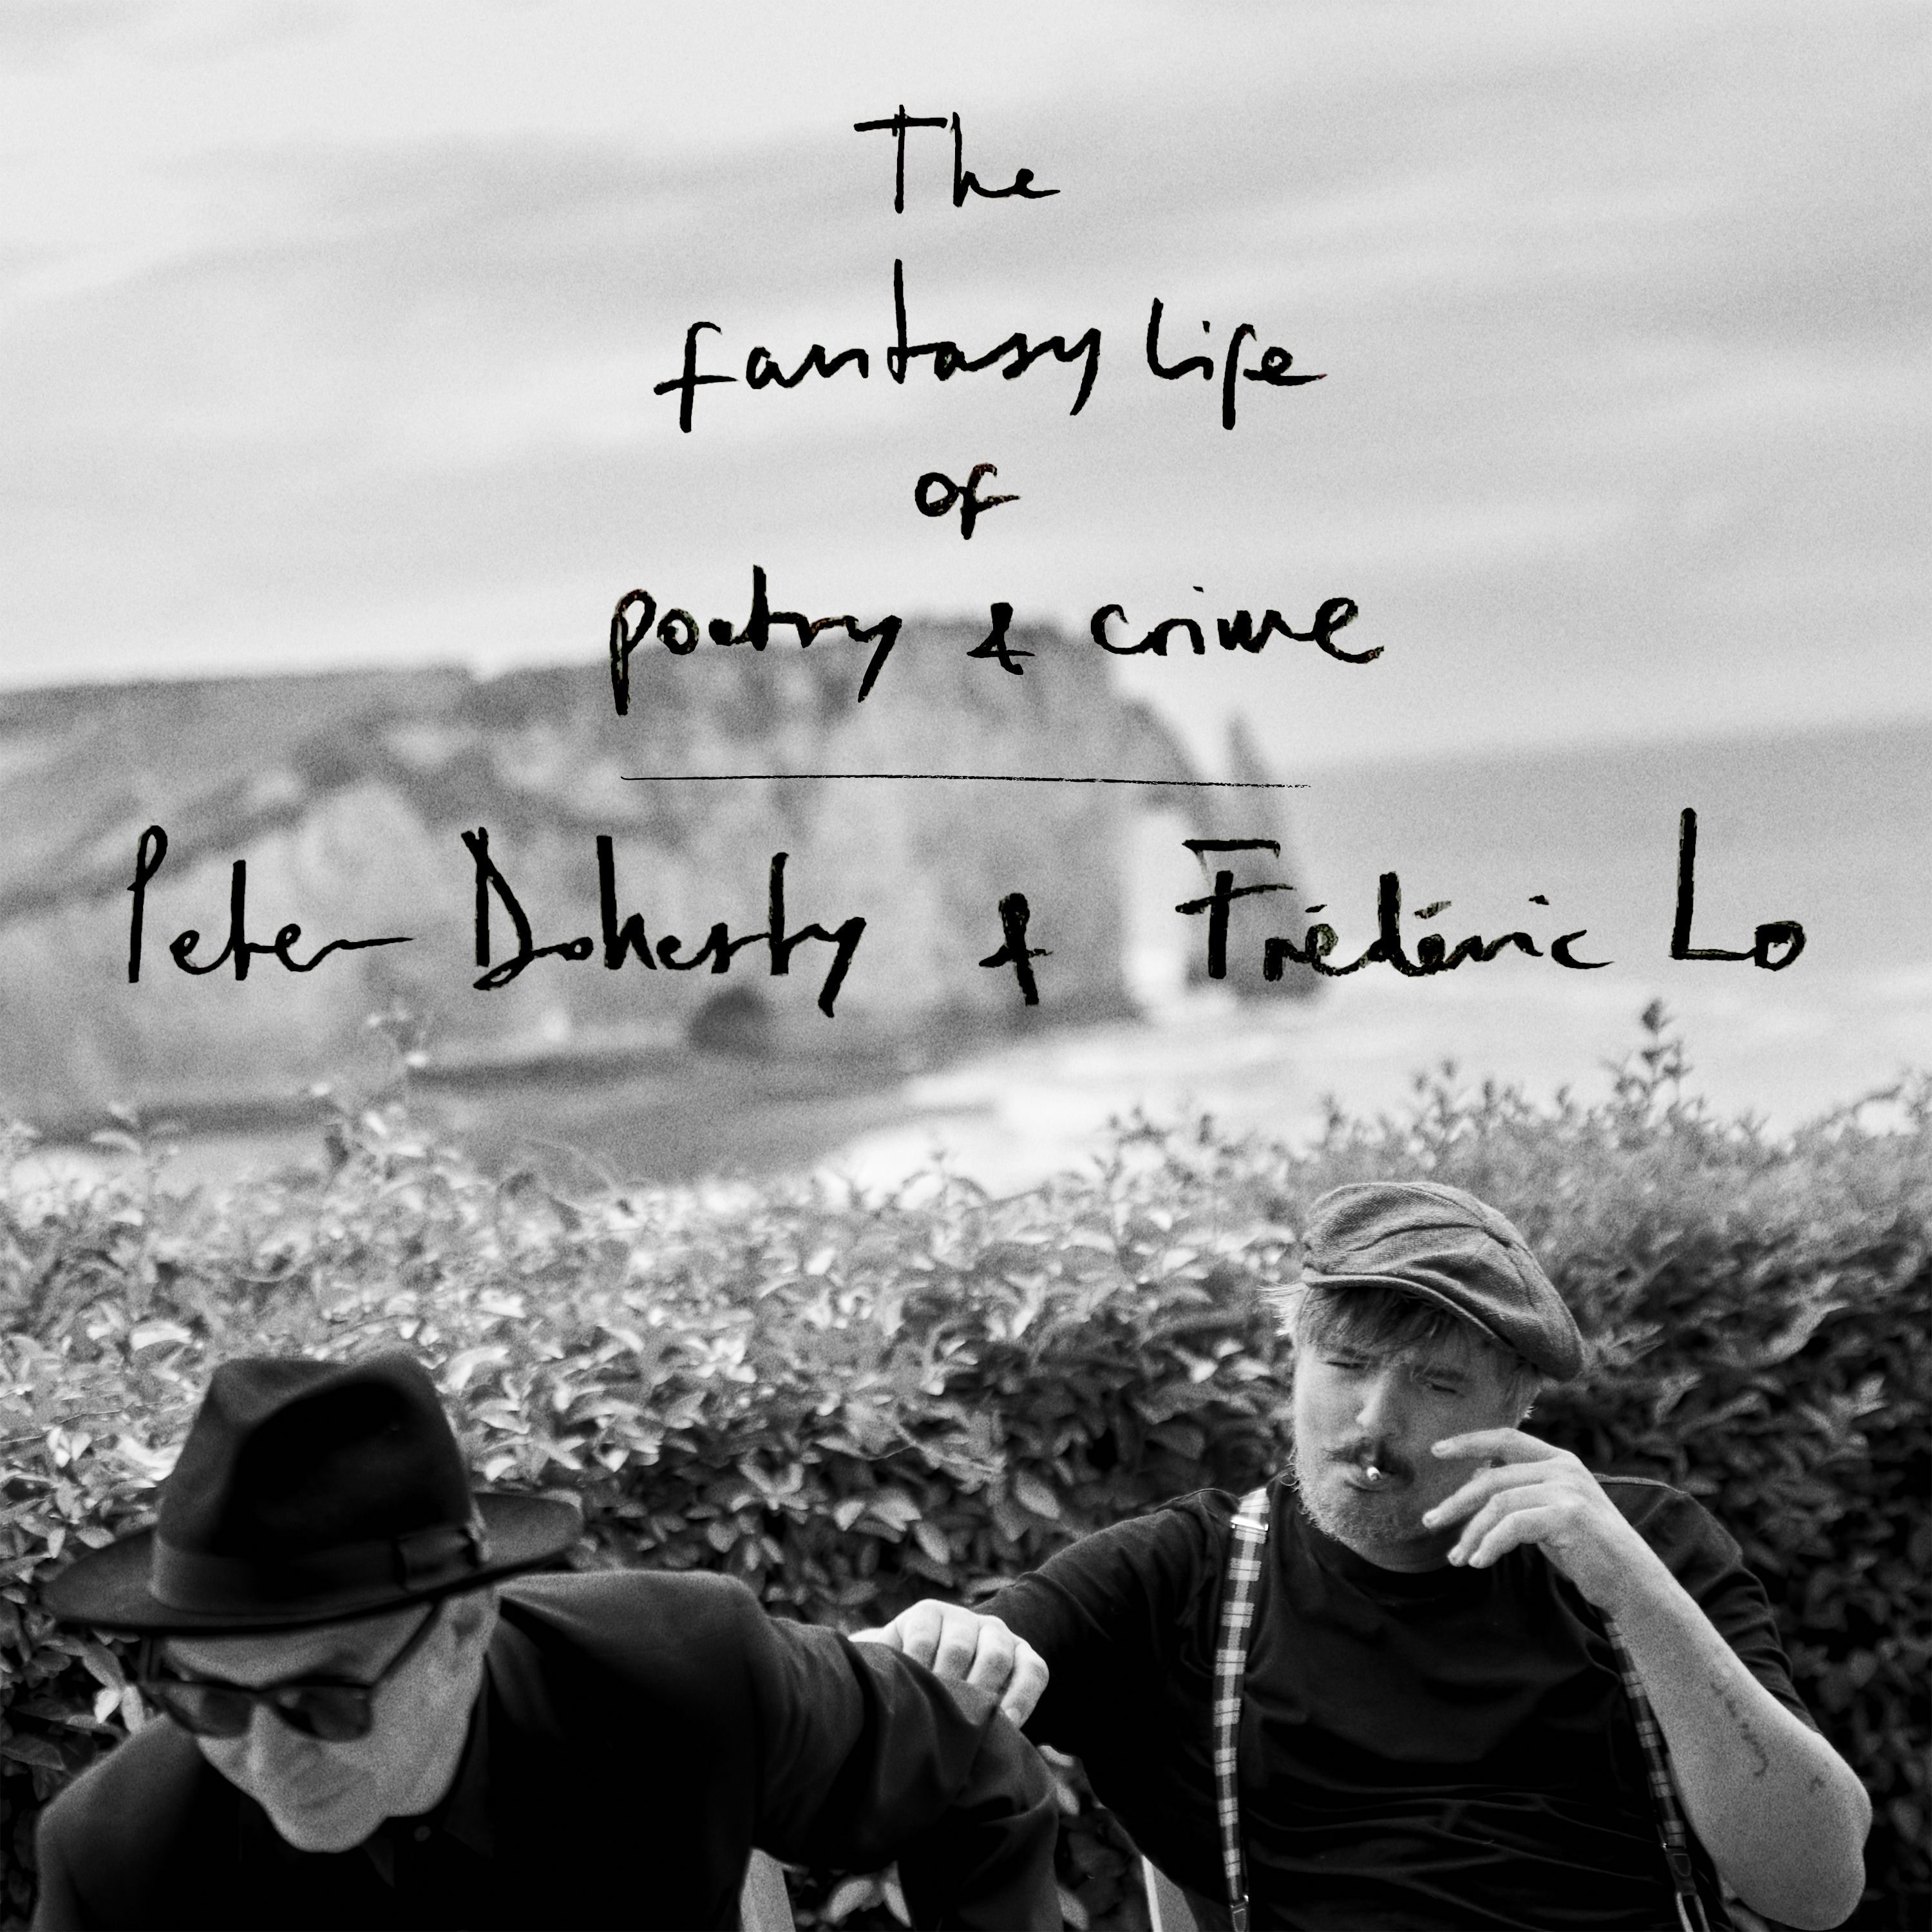 Pete Doherty et Frédéric Lo.